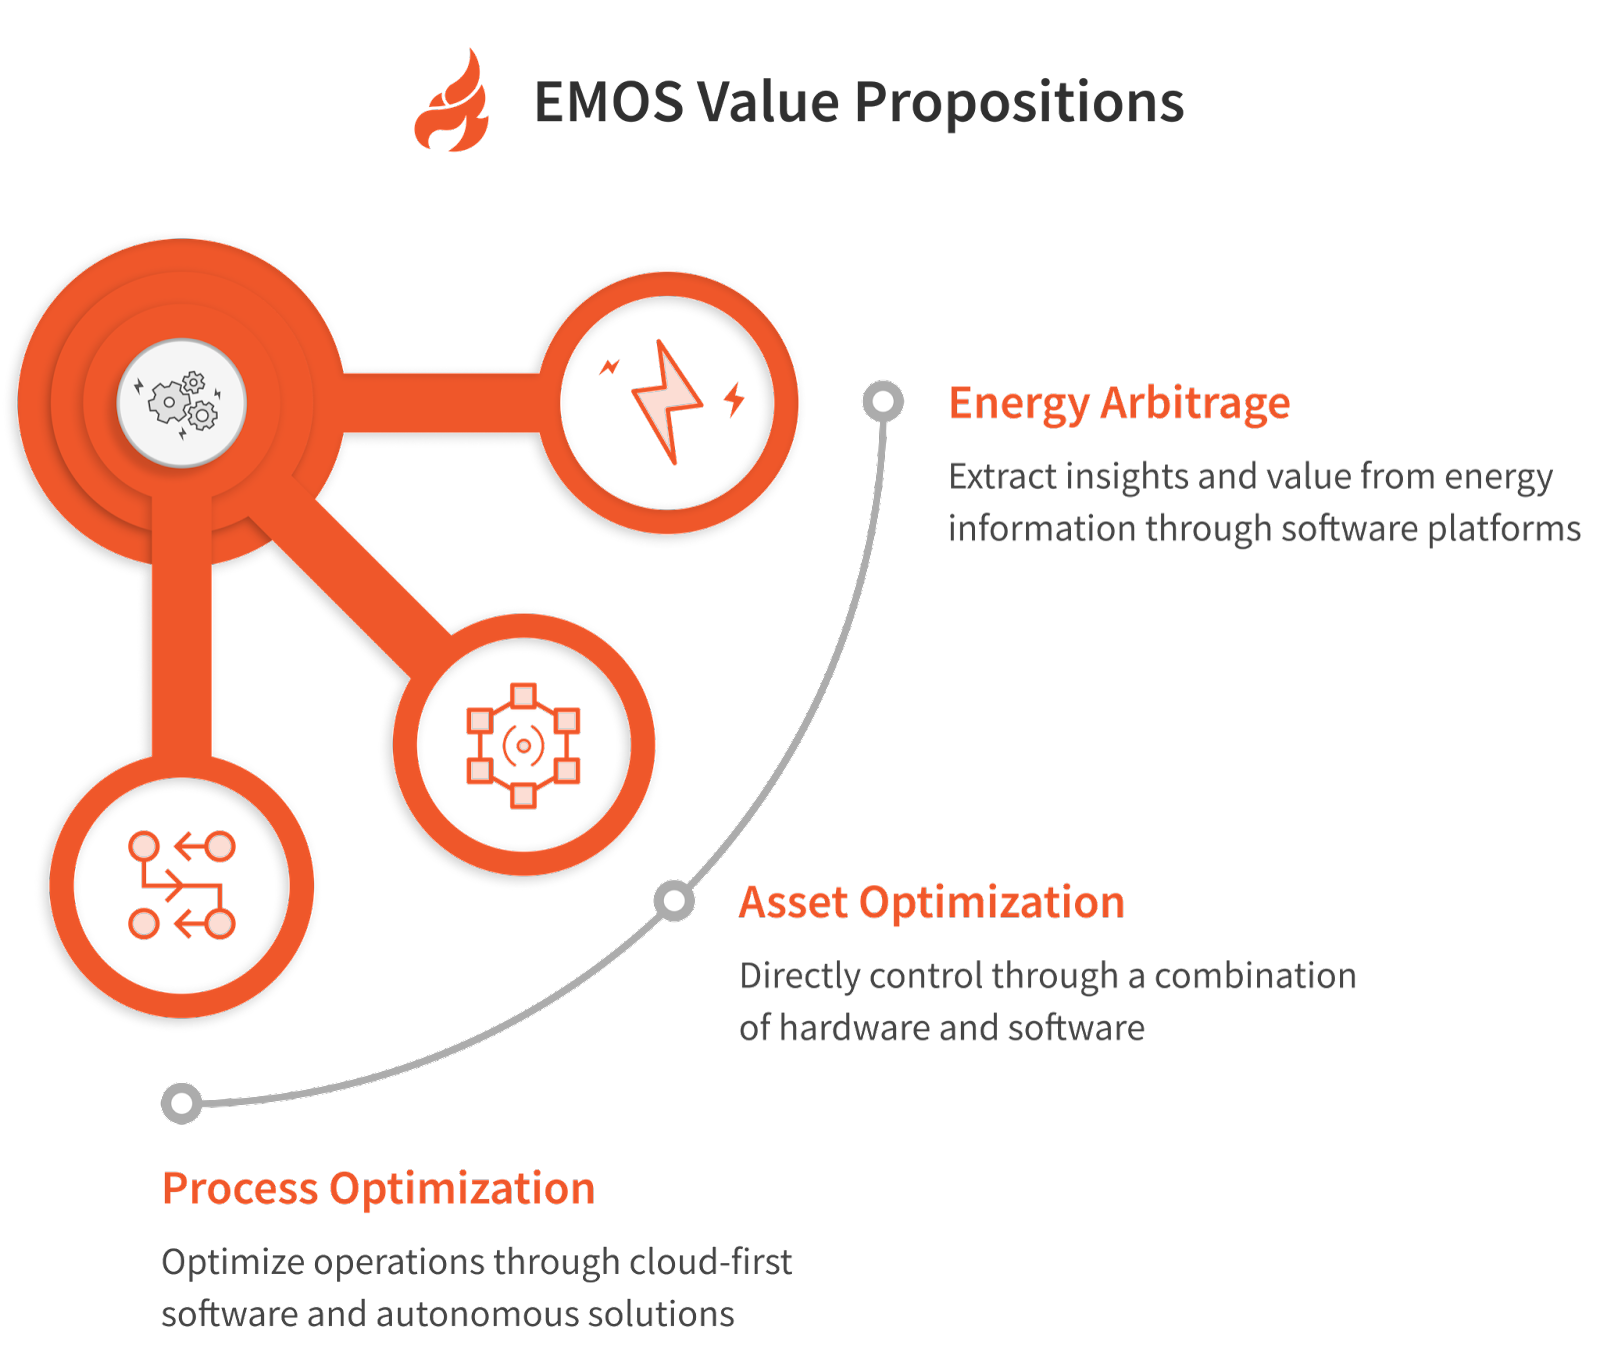 EMOS Value Propositions